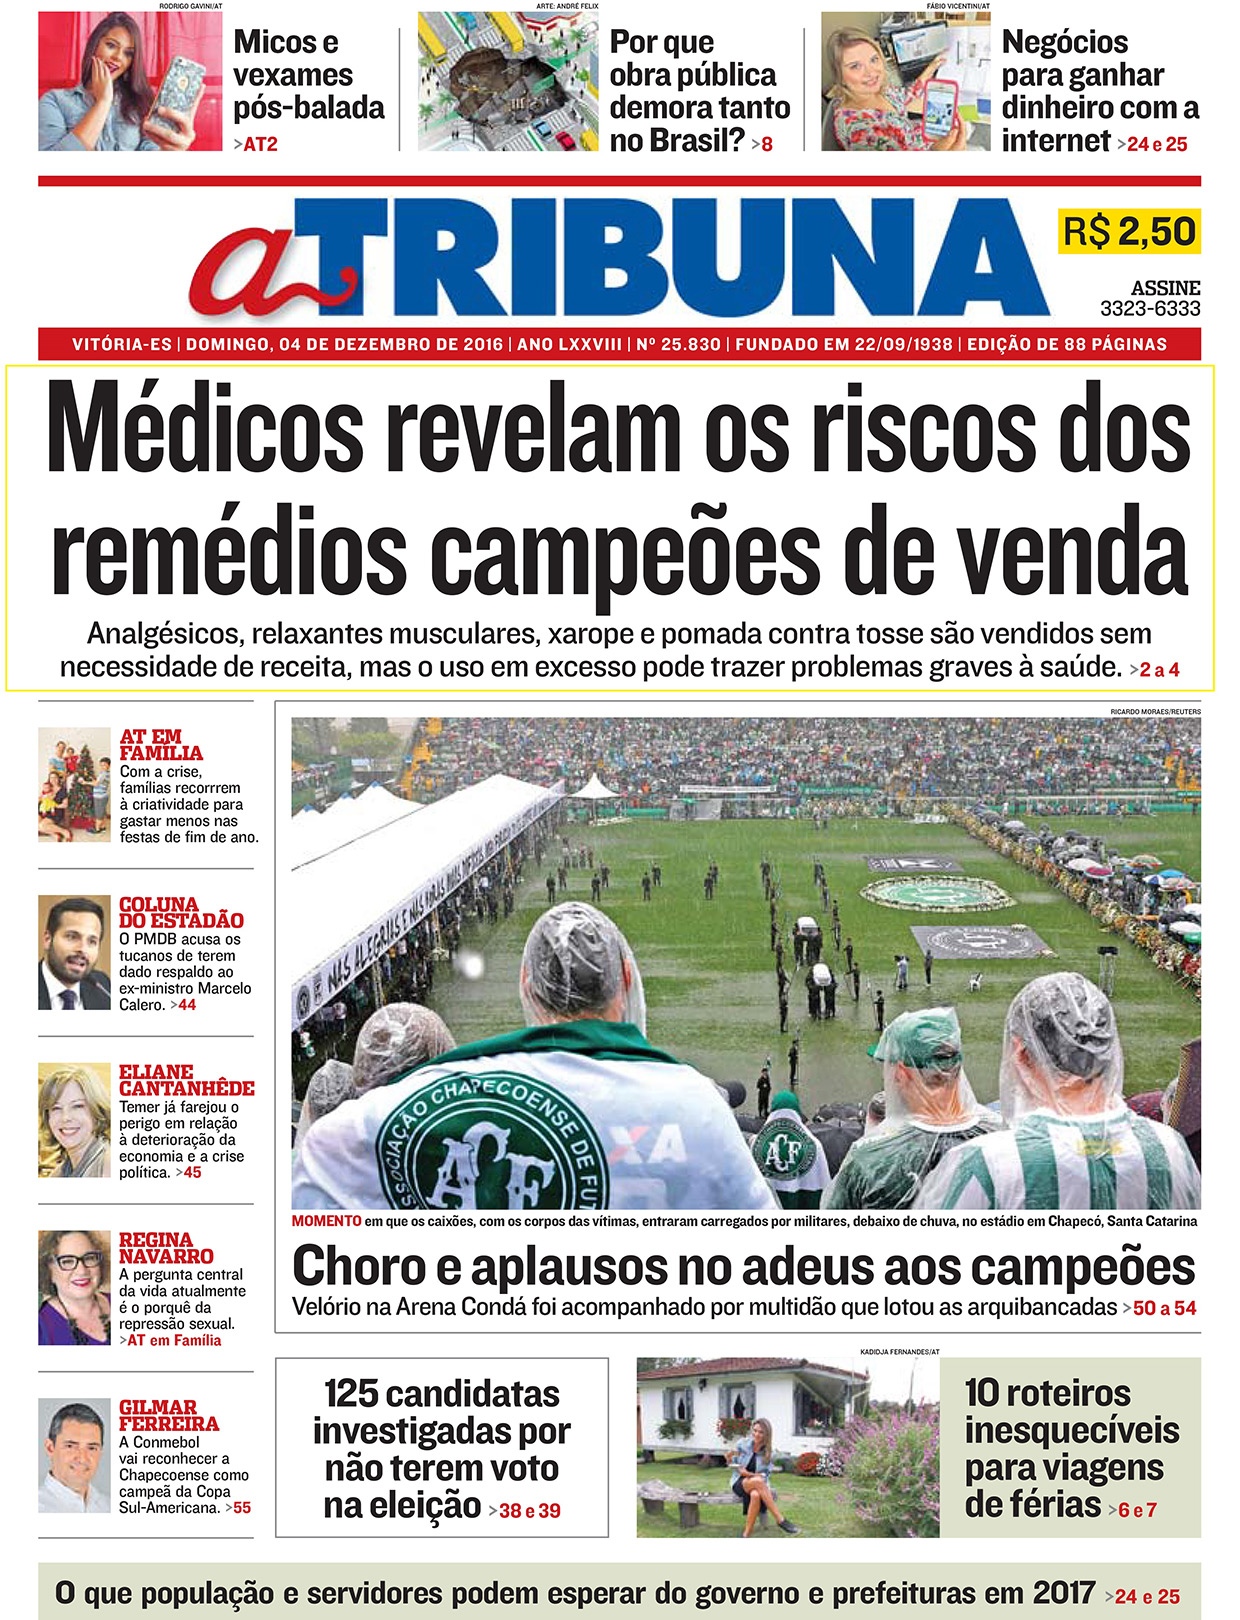 Médicos revelam riscos dos remédios líderes em vendas - A Tribuna - Capa